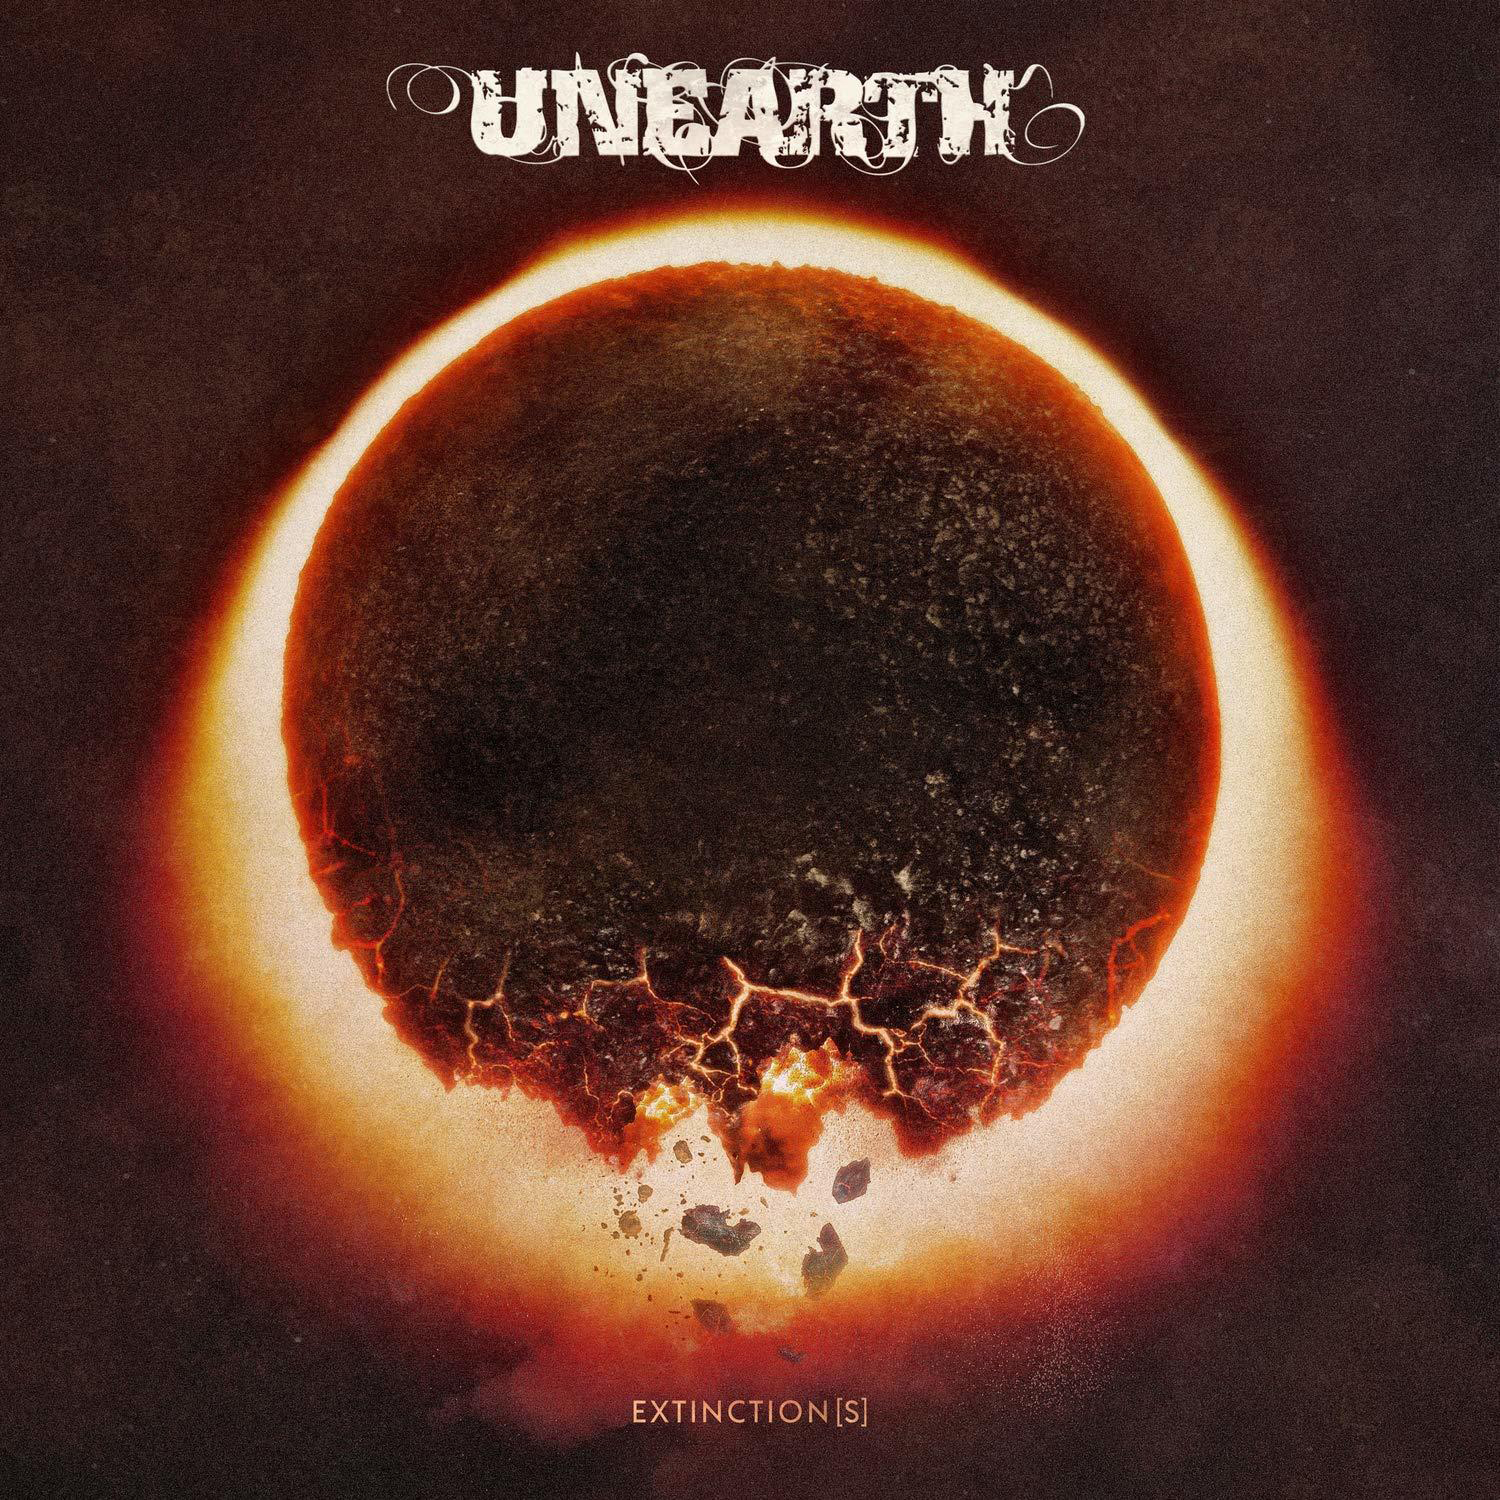 + - (LP Extinction(s) Bonus-CD) - Unearth